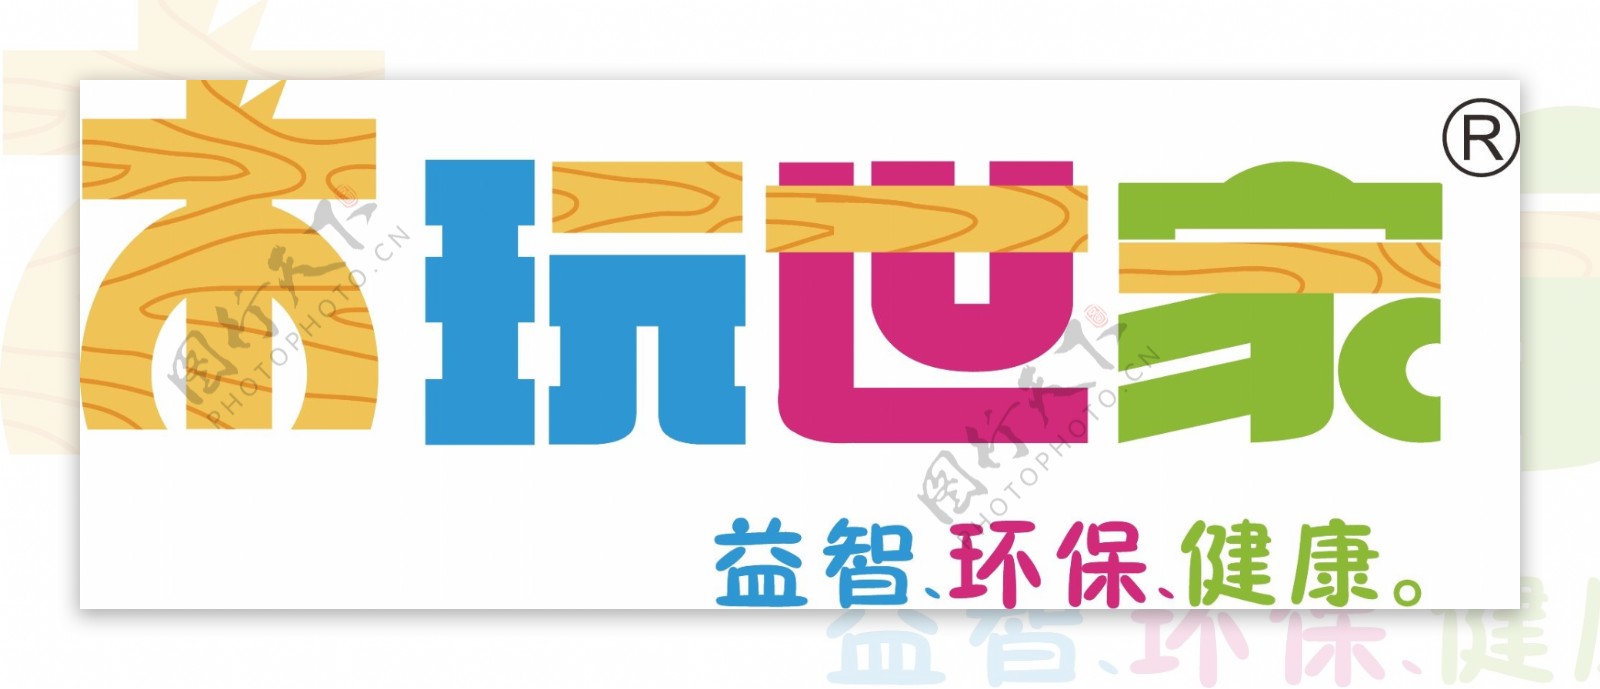 木玩世家logo中岛图片